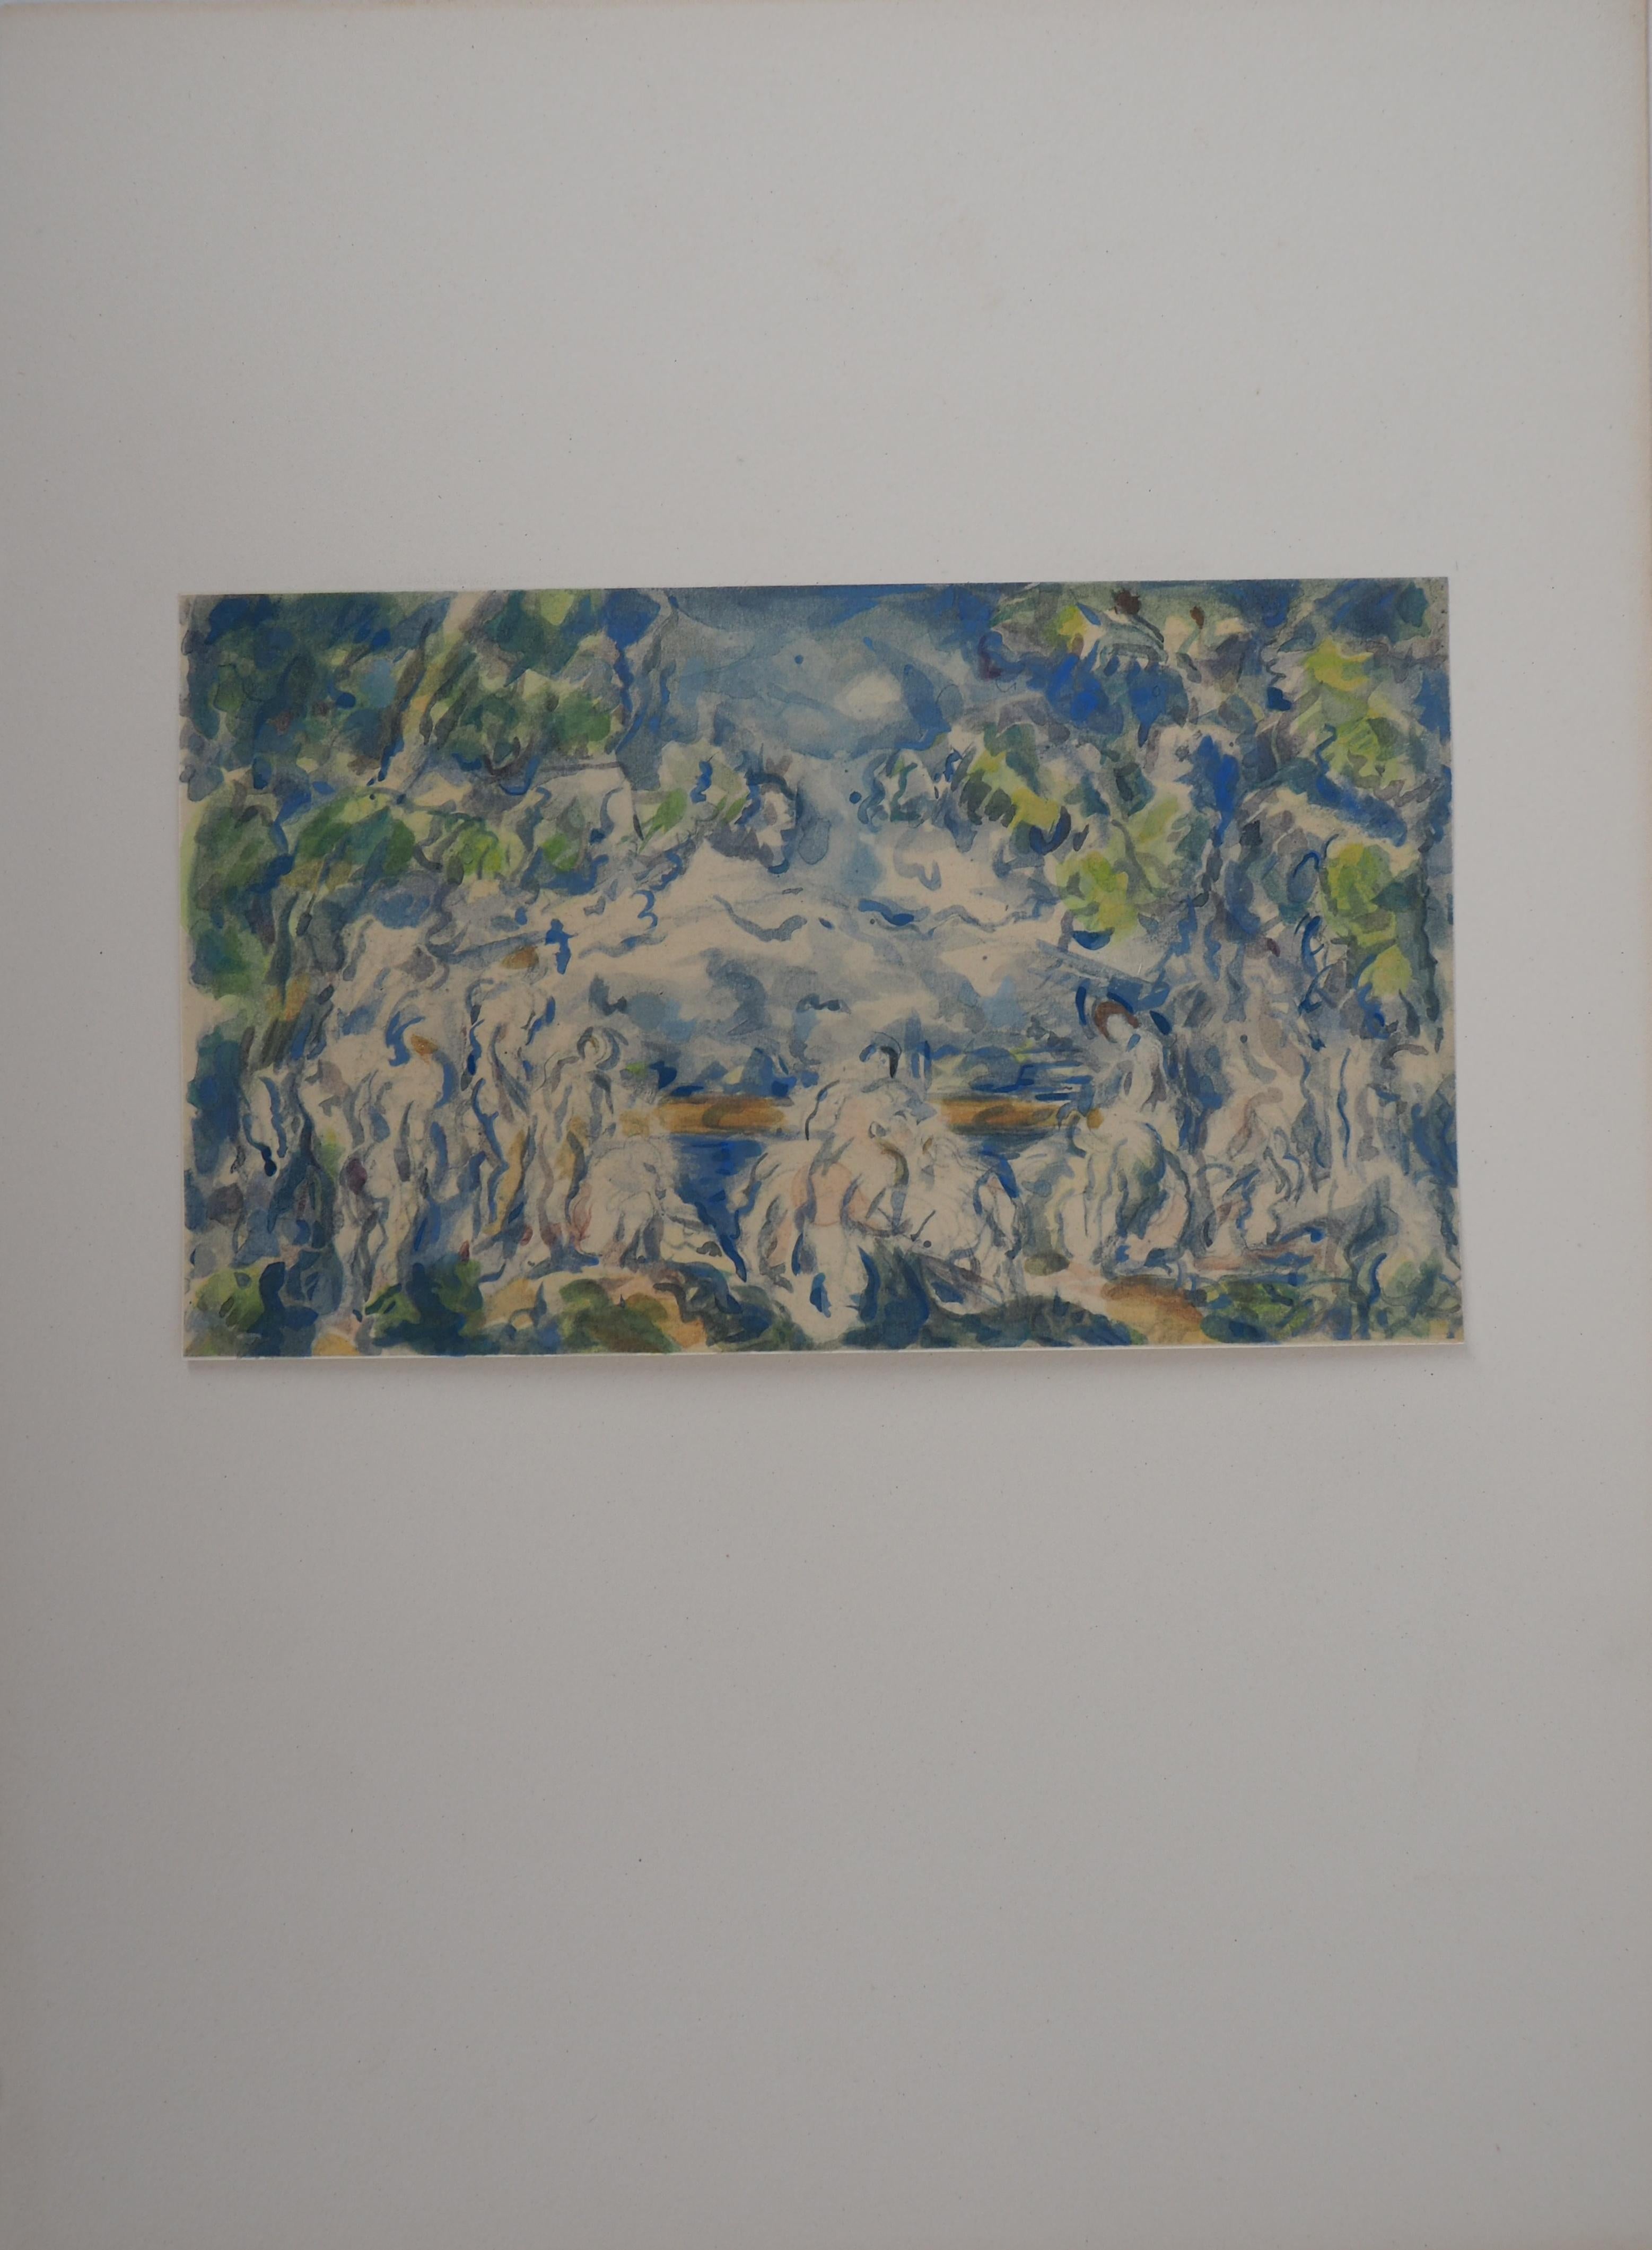 Gruppe von Badenden in der Nähe des Sees – Lithographie und Stencil-Aquarell, 1947 – Print von After Paul Cezanne